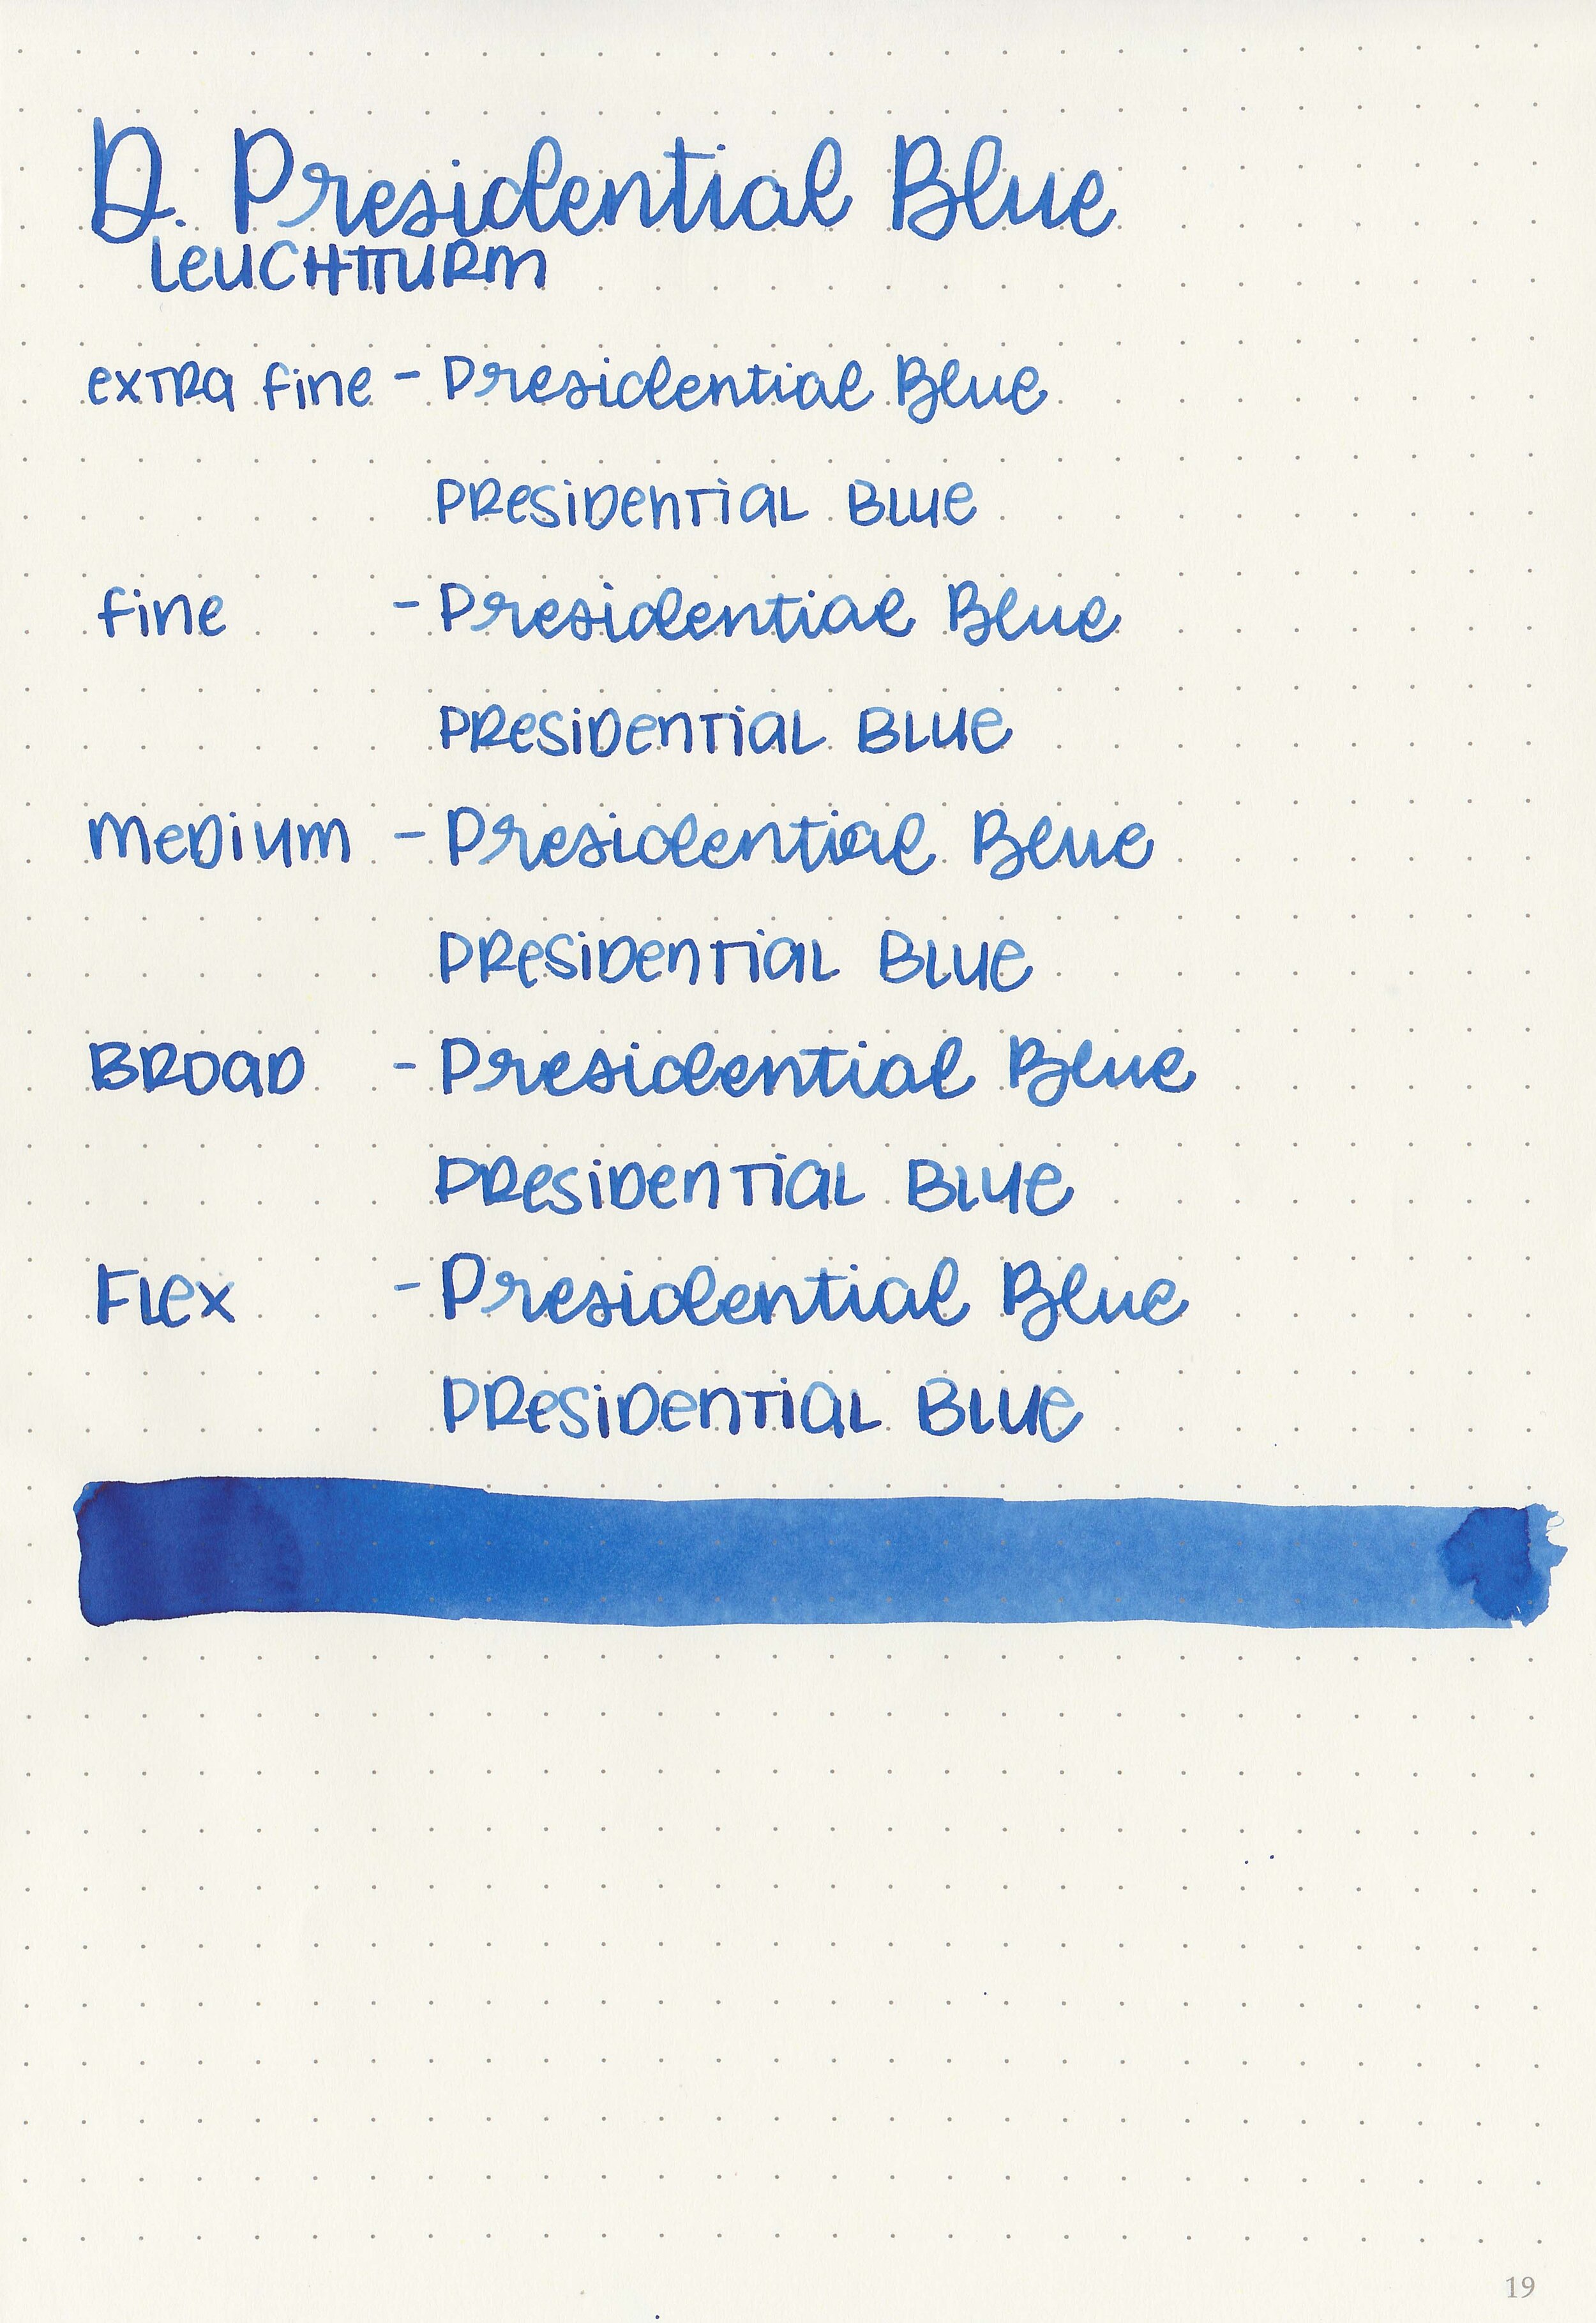 d-presidential-blue-9.jpg